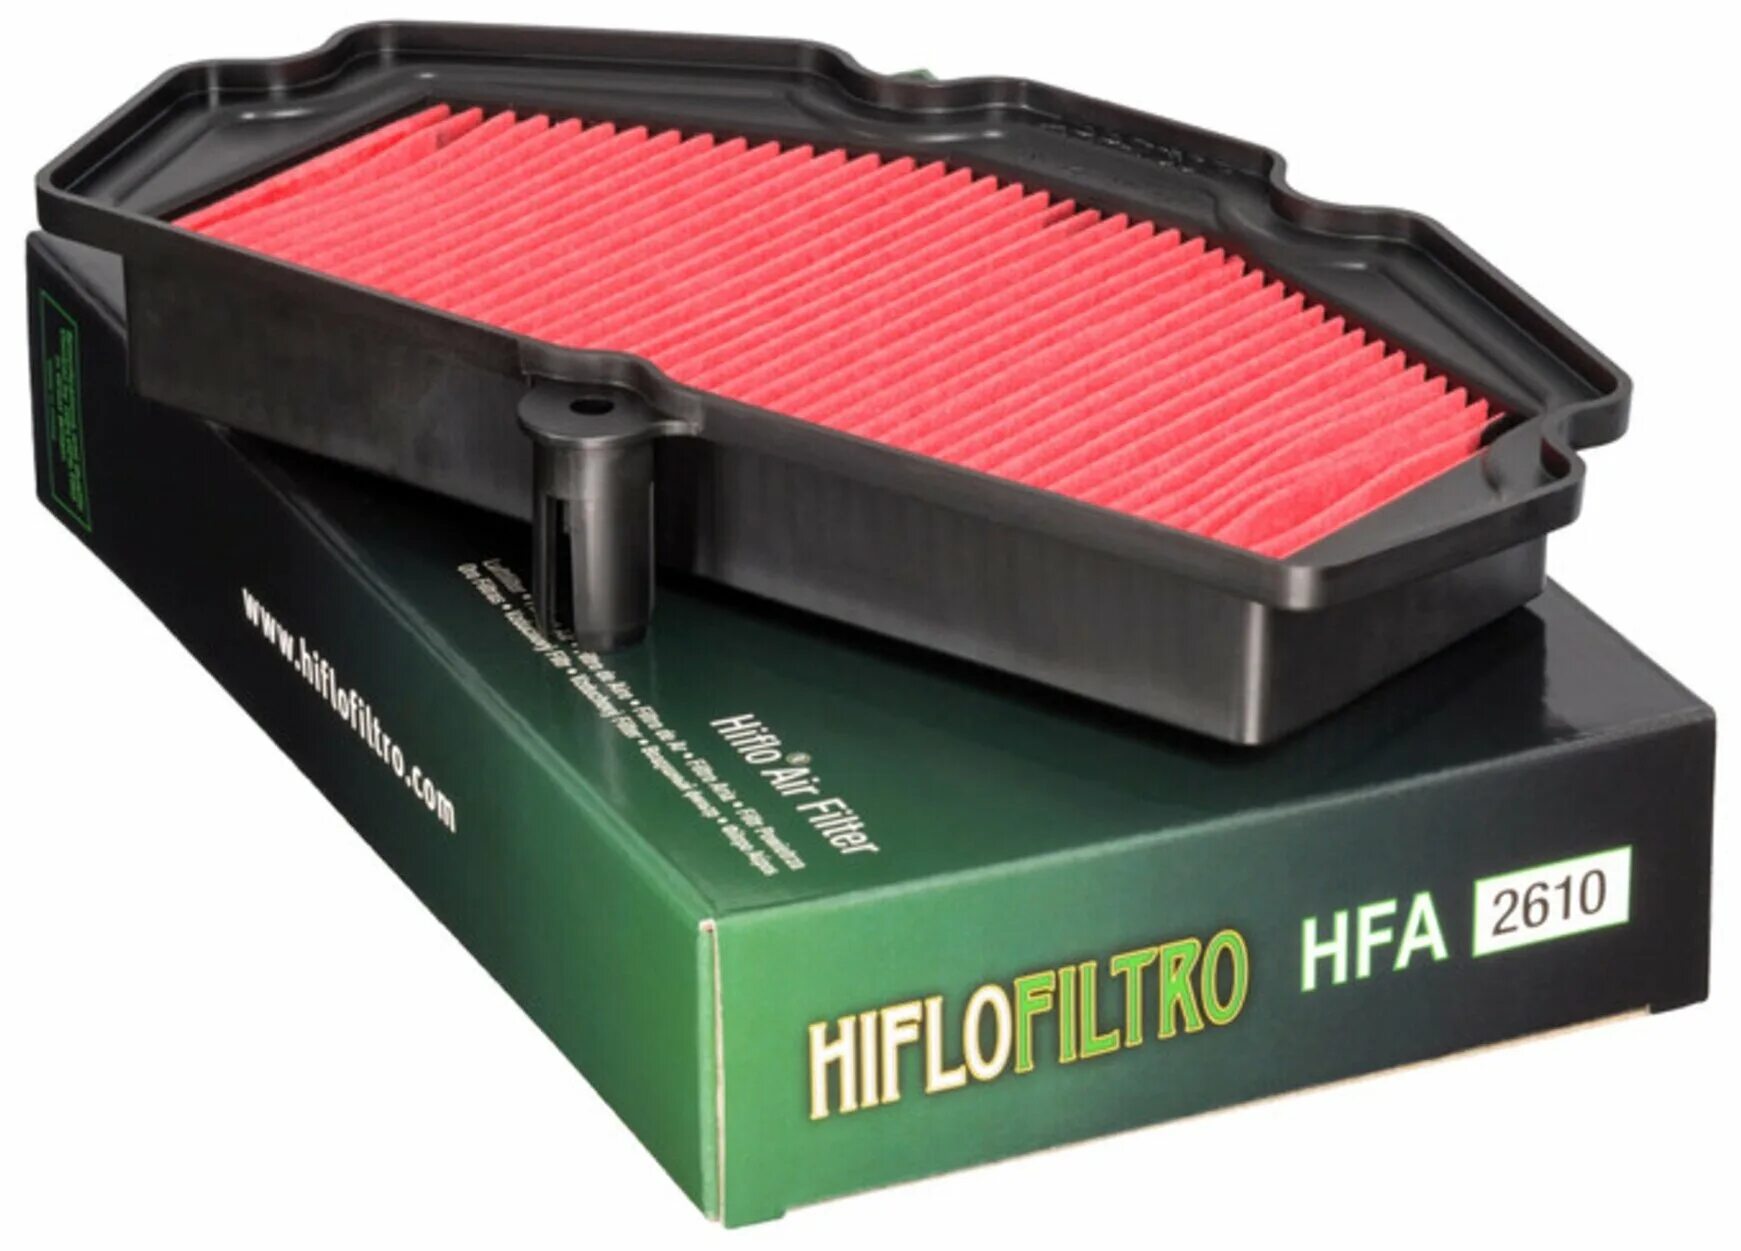 Фильтр воздушный HIFLO hff4012. Фильтр воздушный hfa2610. Воздушный фильтр Kawasaki 11013. Воздушный фильтр HIFLO Kawasaki 2607. Чем отличаются воздушные фильтры